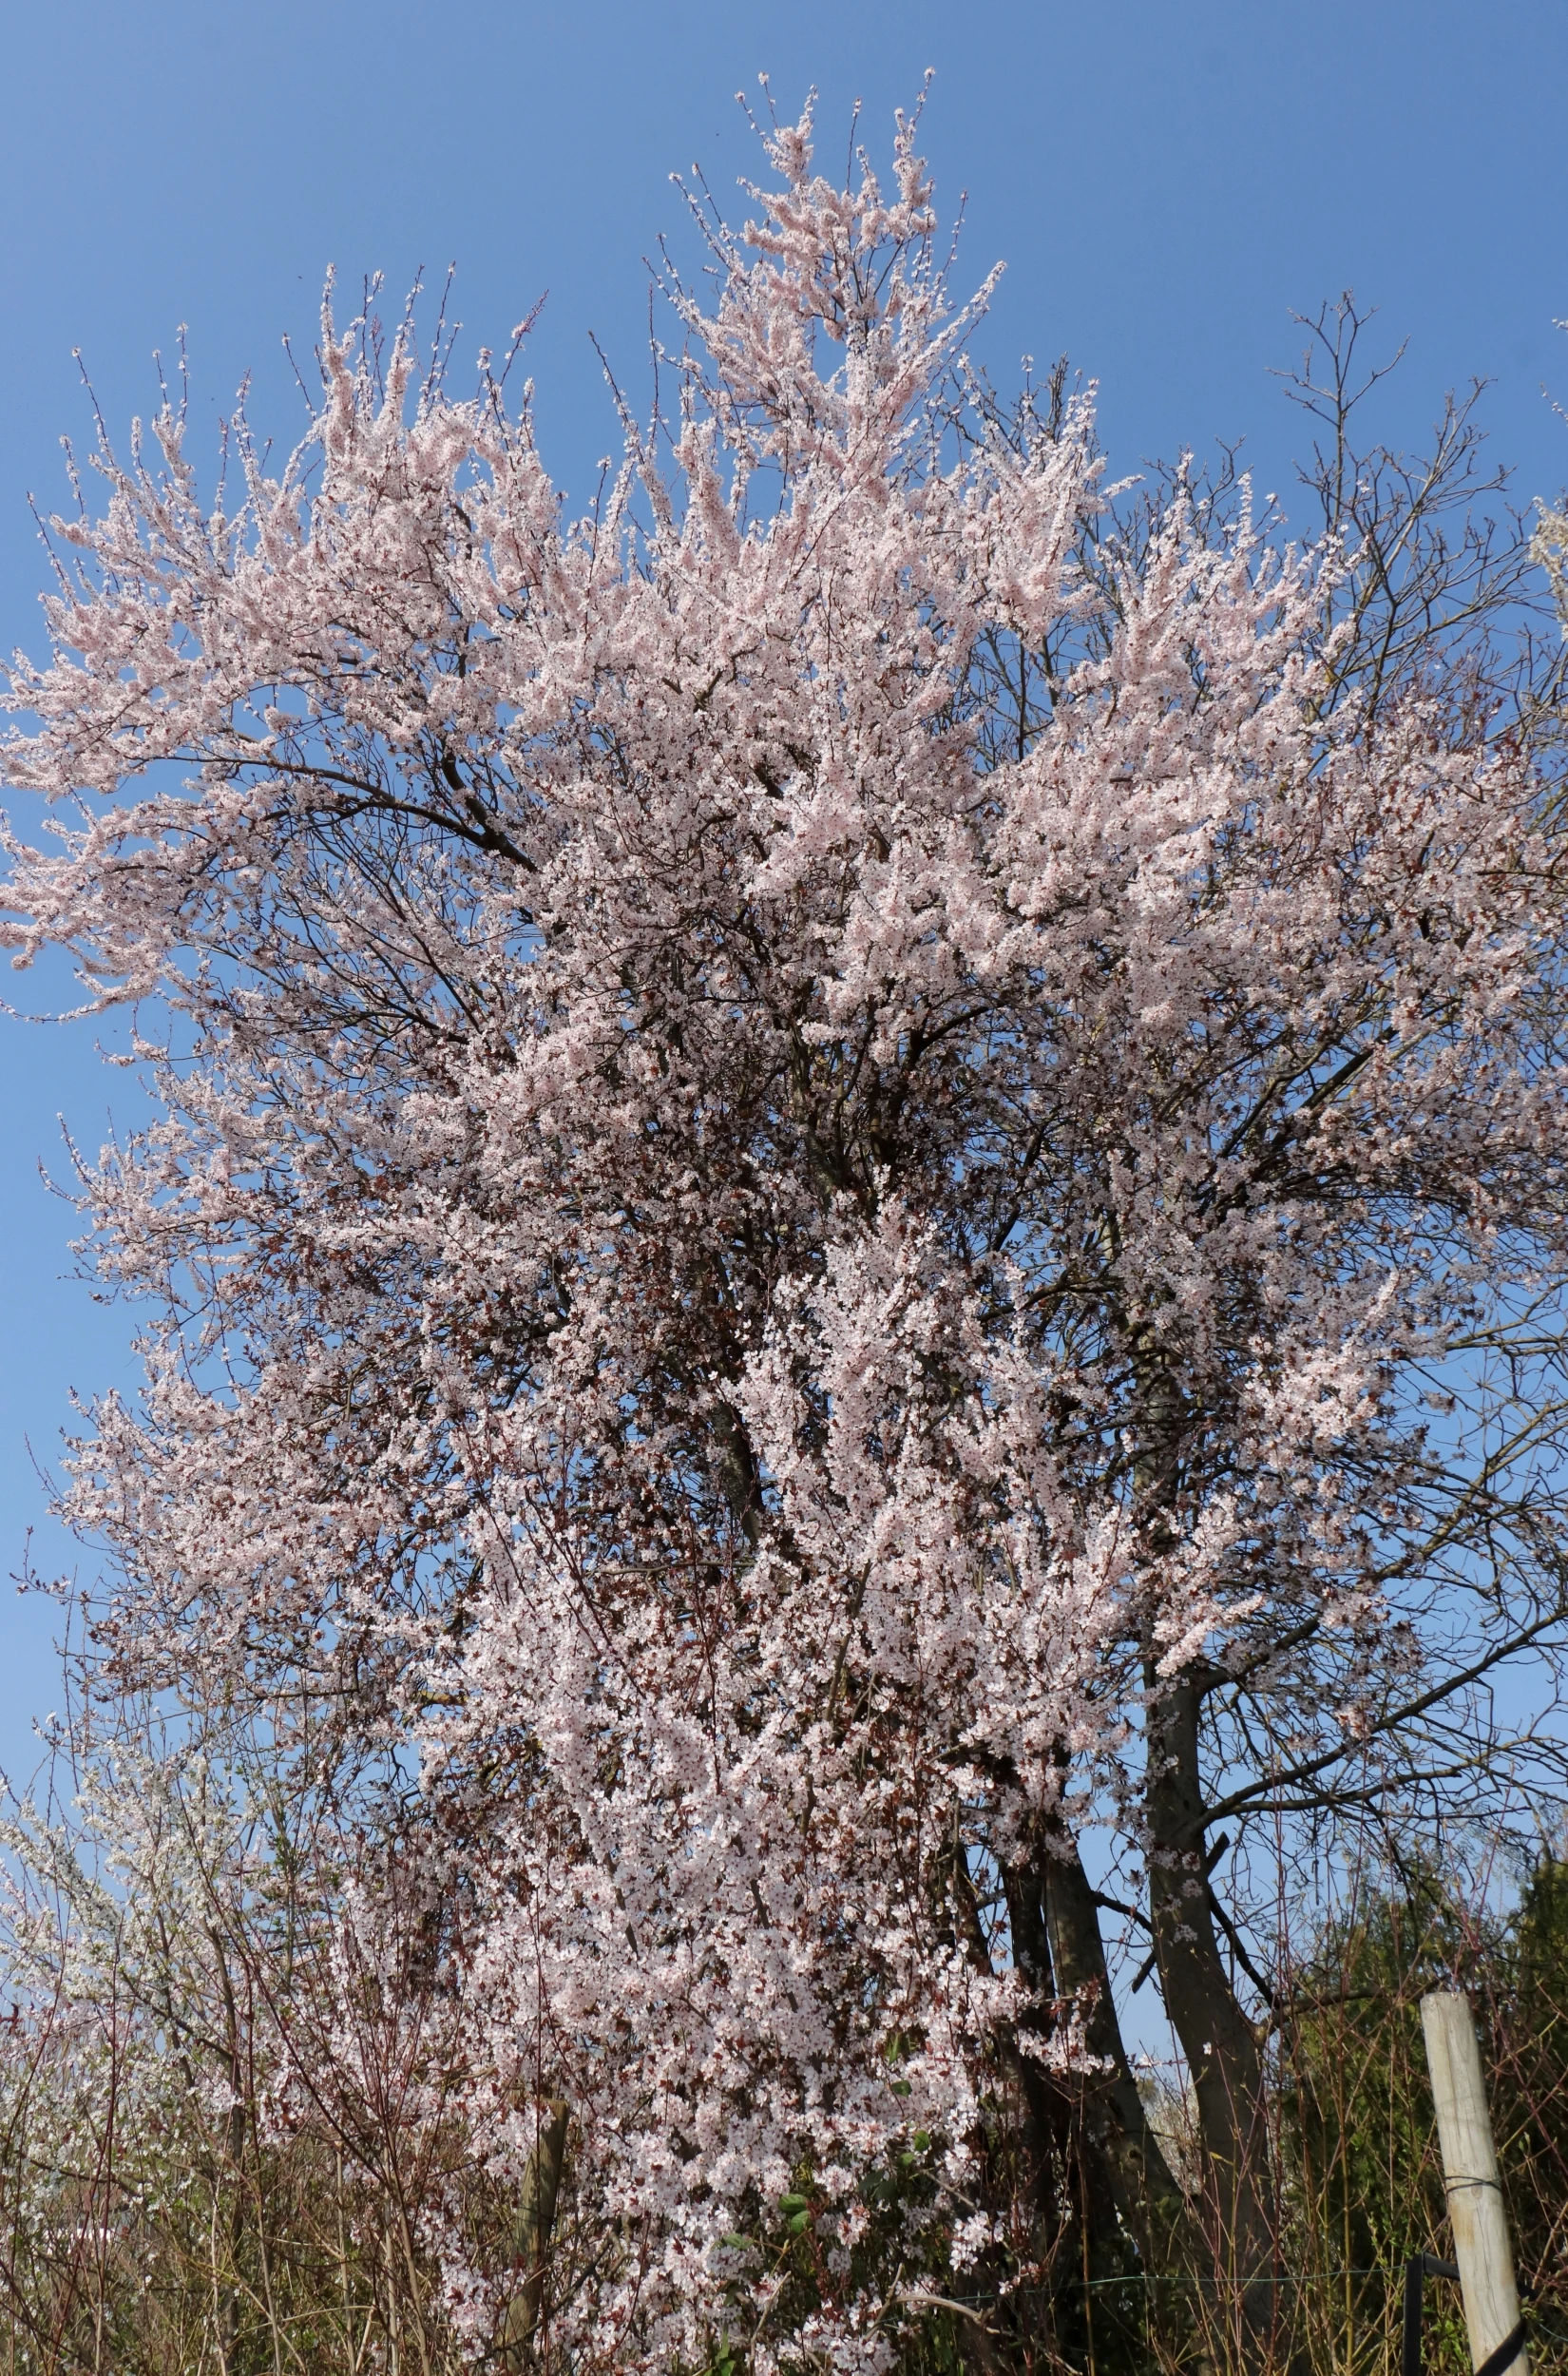 Blutpflaume - Der gesamte blühende Baum. Es handelt sich um einen ca. 5 Meter hohen Baum. Das Foto wurde vor dem Baum aufgenommen. Der Hintergrund besteht aus einem blauen Himmel.